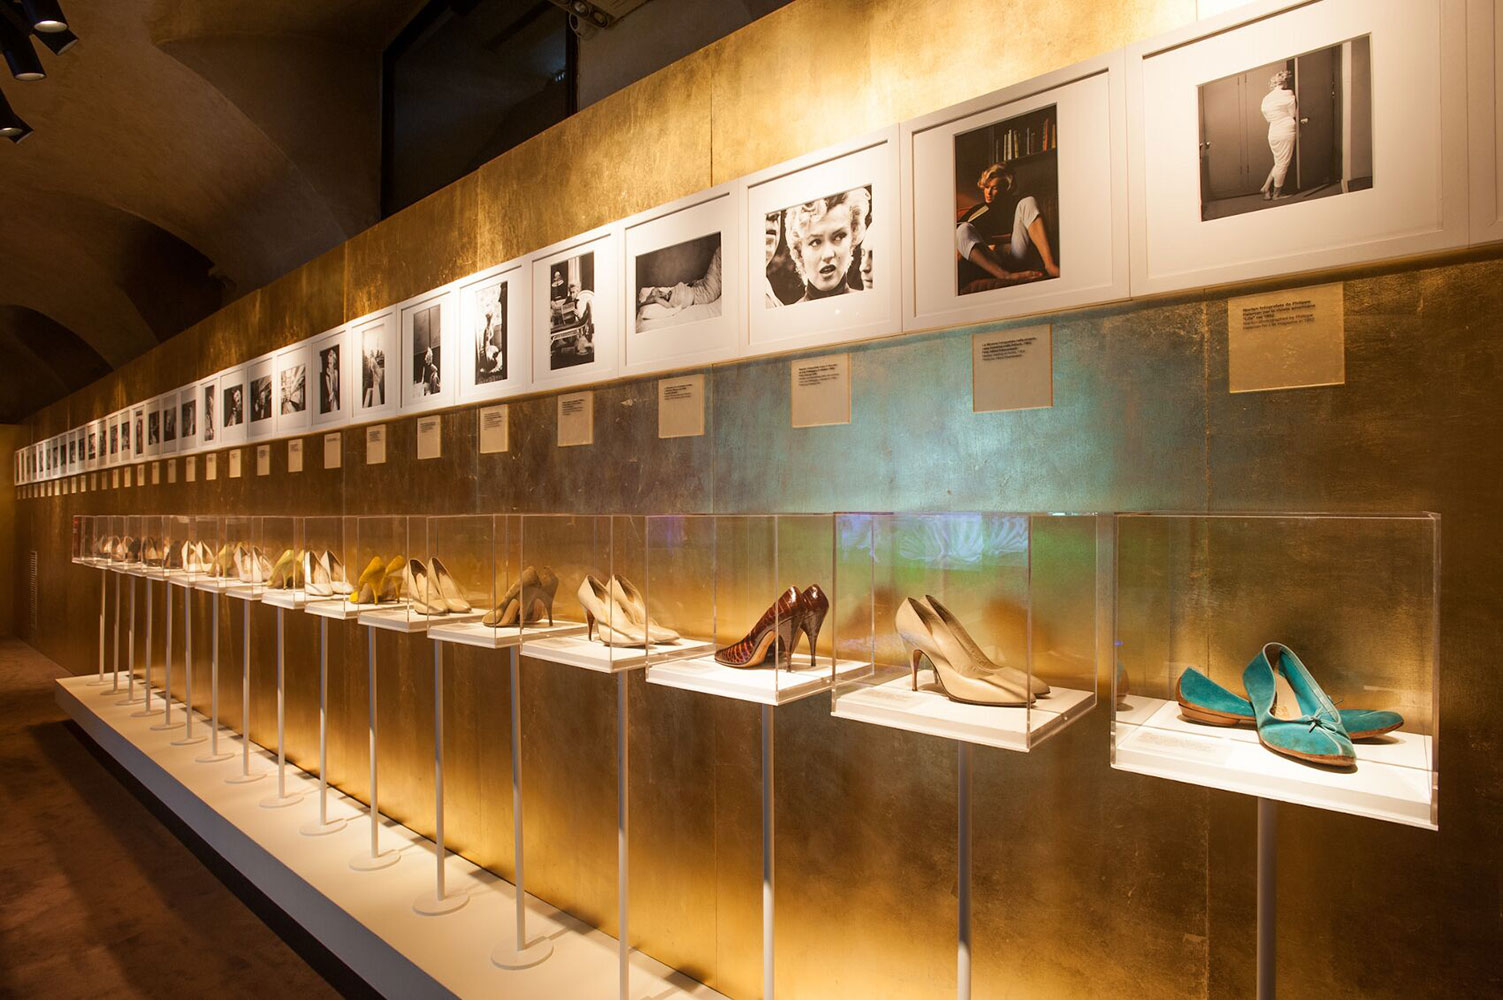 Năm 2012, Salvatore Ferragamo từng mở triển lãm về Marilyn Monroe, trưng bày những đôi giày cô từng mang từ thương hiệu. Ảnh: The Skinny Beep